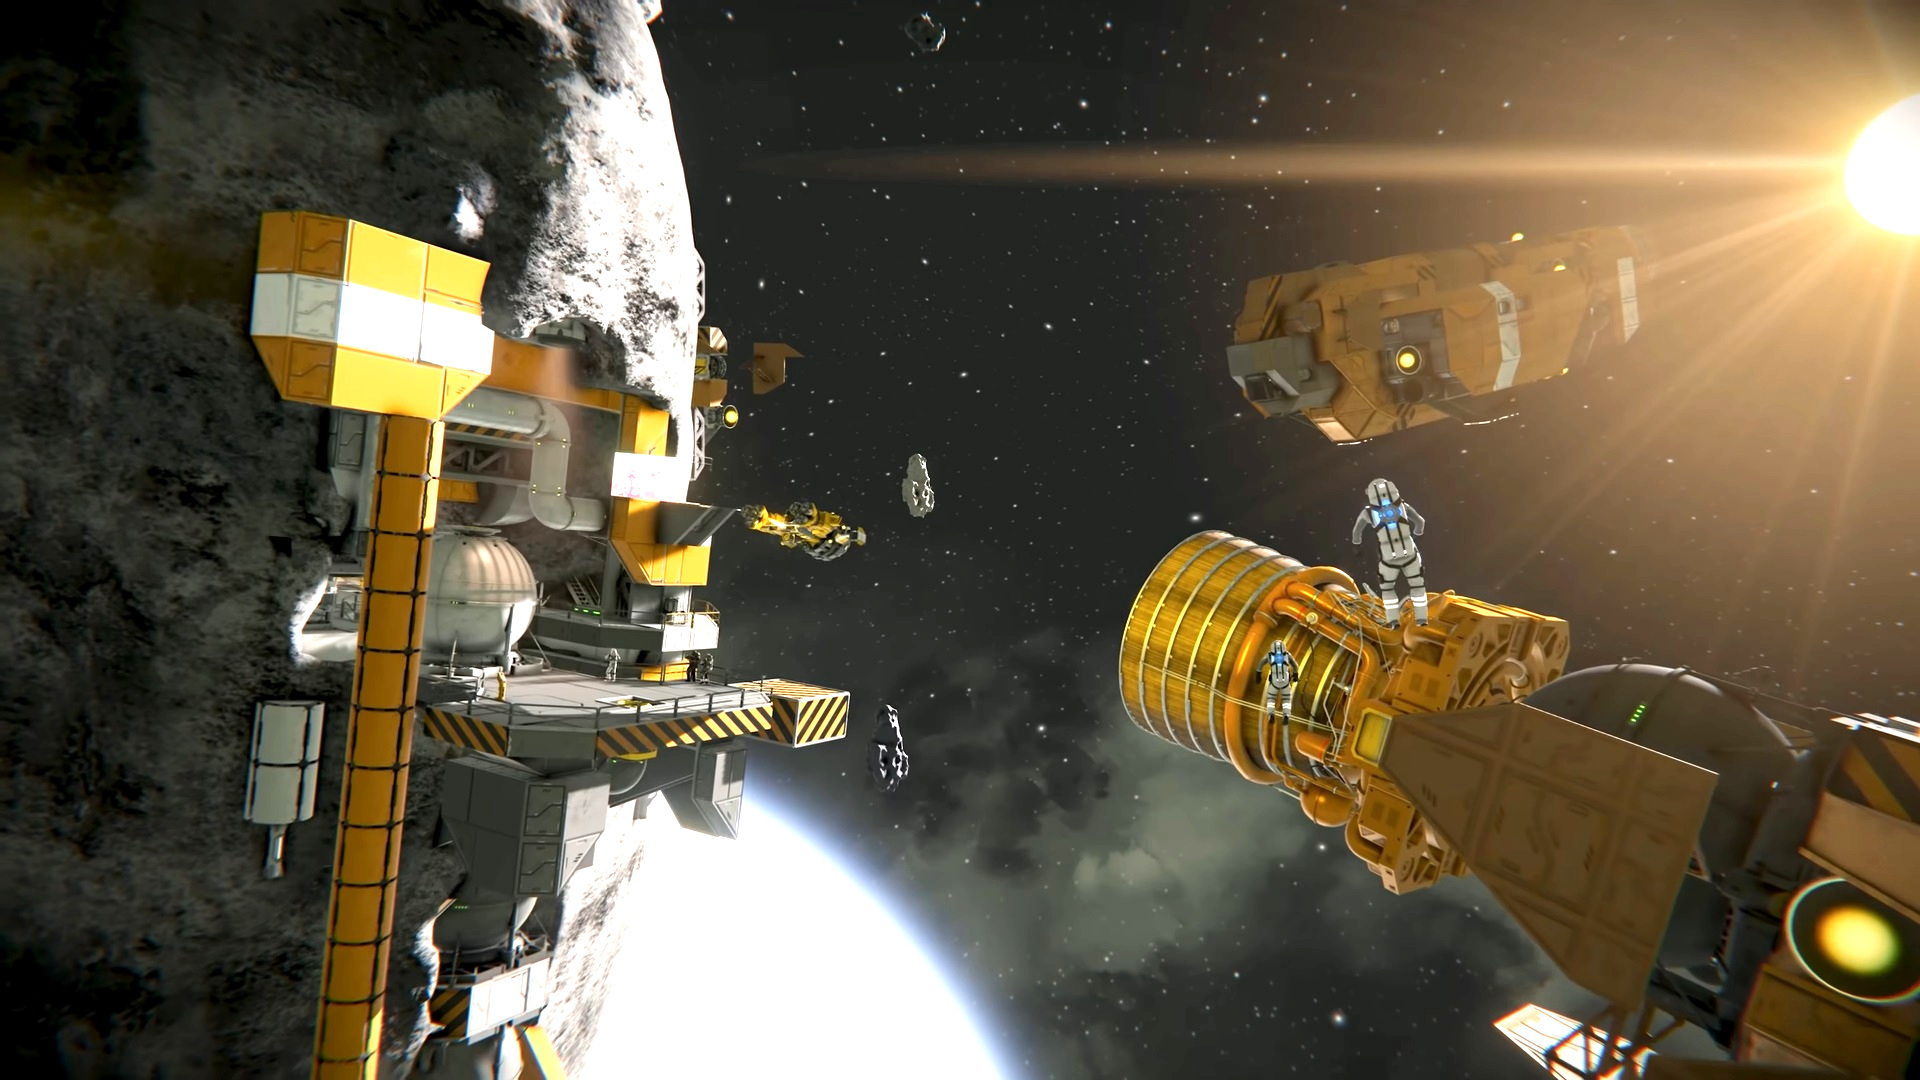 Гра-симулятор космічного простору Space Engineers капітально оновлює індустрію за допомогою понад 100 нових деталей